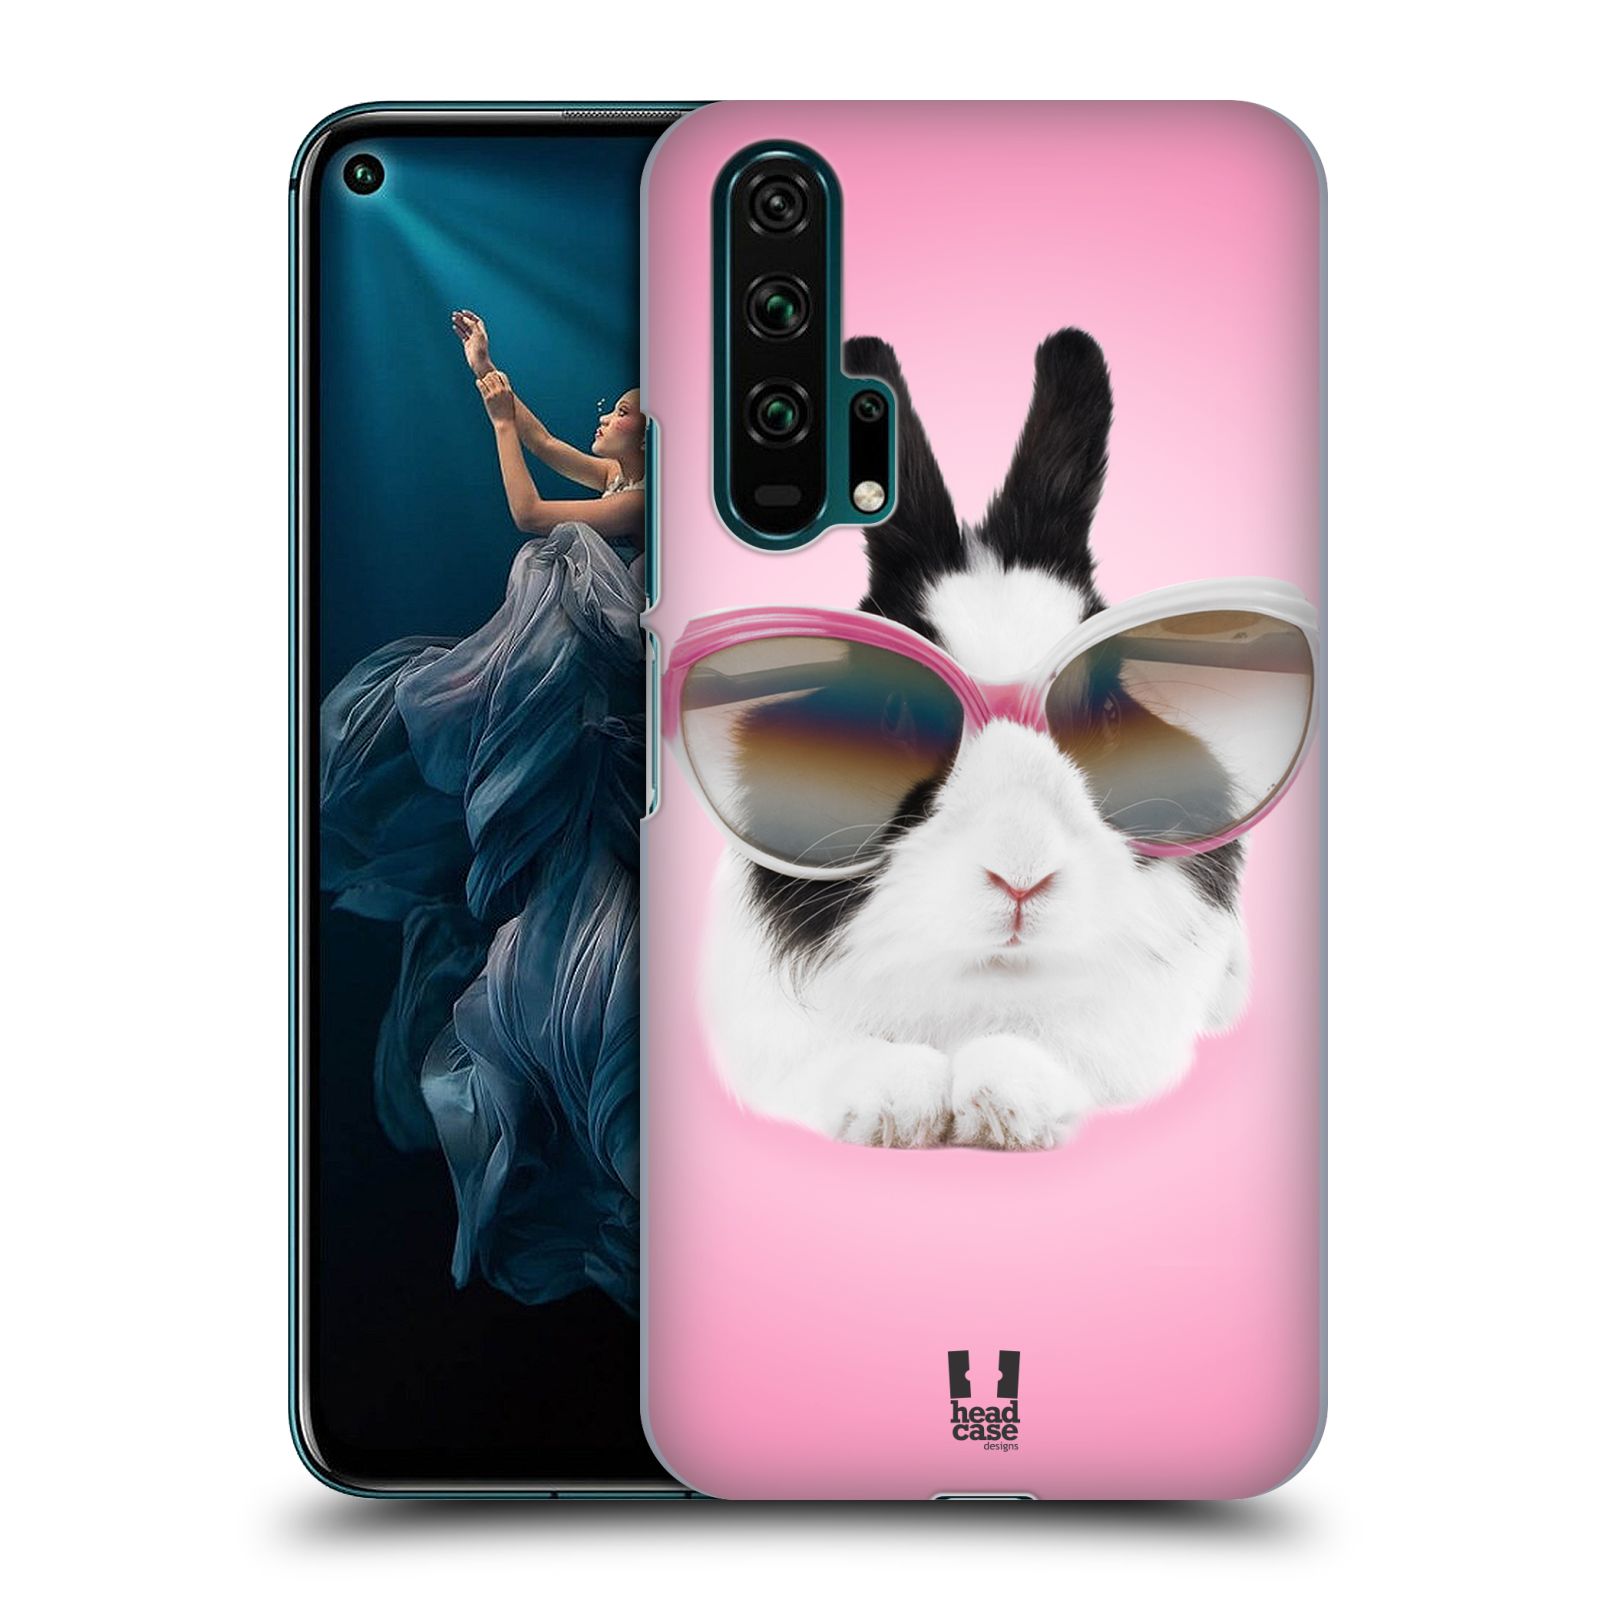 Pouzdro na mobil Honor 20 PRO - HEAD CASE - vzor Legrační zvířátka roztomilý králíček s brýlemi růžová